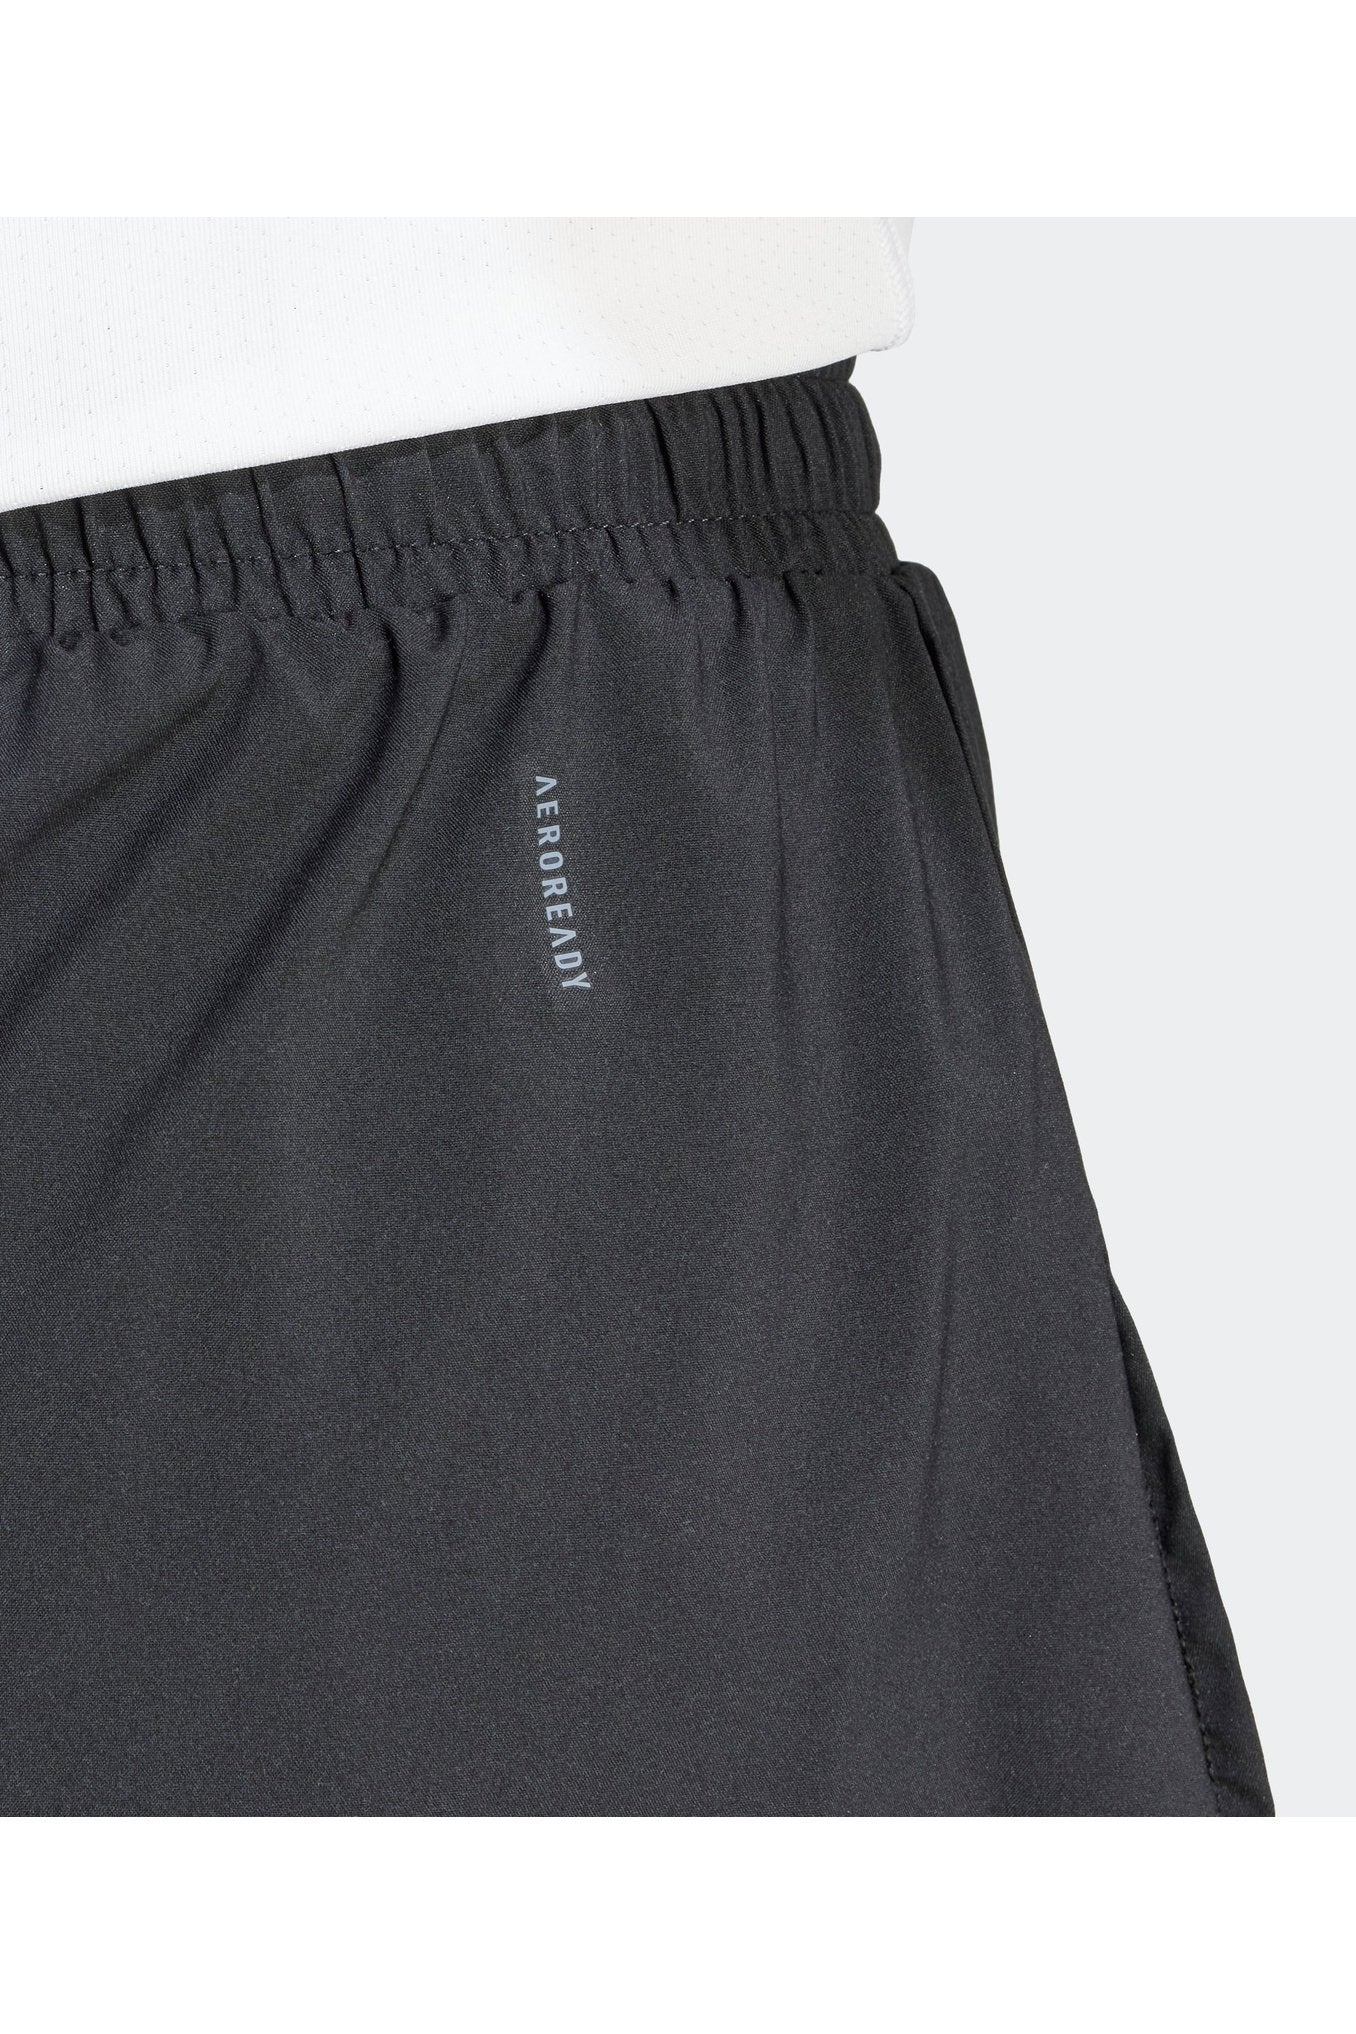 מכנסיים קצרים לנשים DESIGNED FOR TRAINING 2-IN-1  בצבע שחור